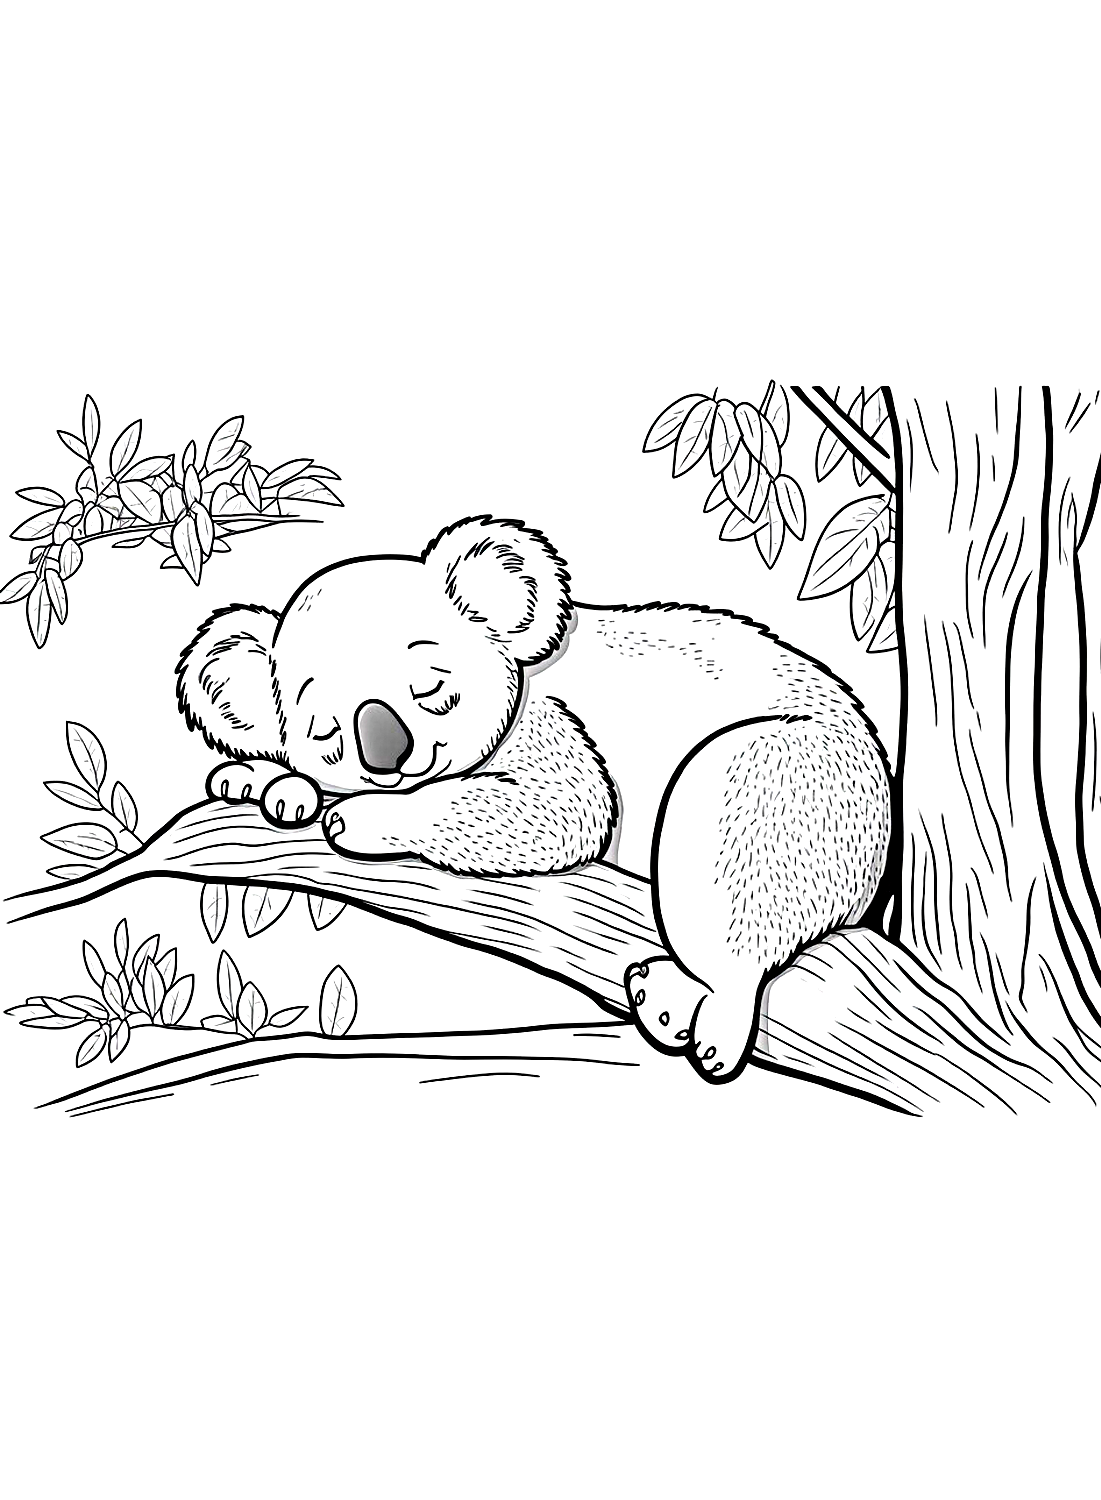 Página colorida do Coala Adormecido de Koala